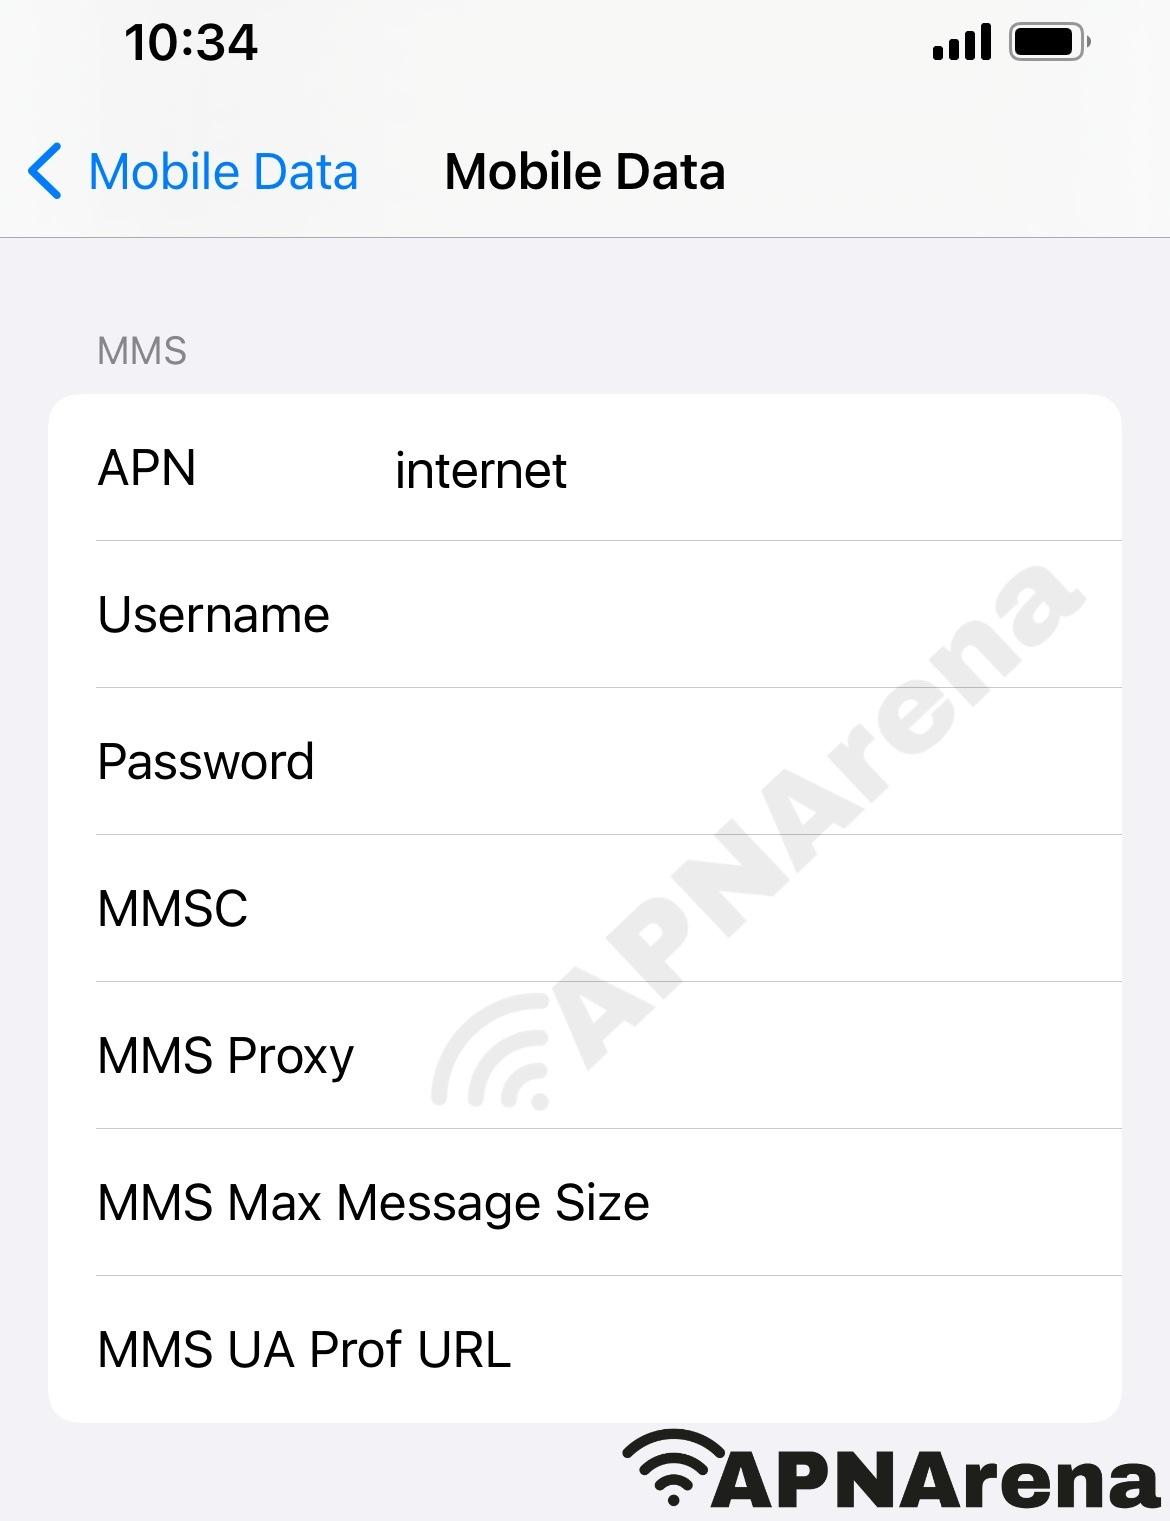 Vi (Vodafone Idea) MMS Settings for iPhone